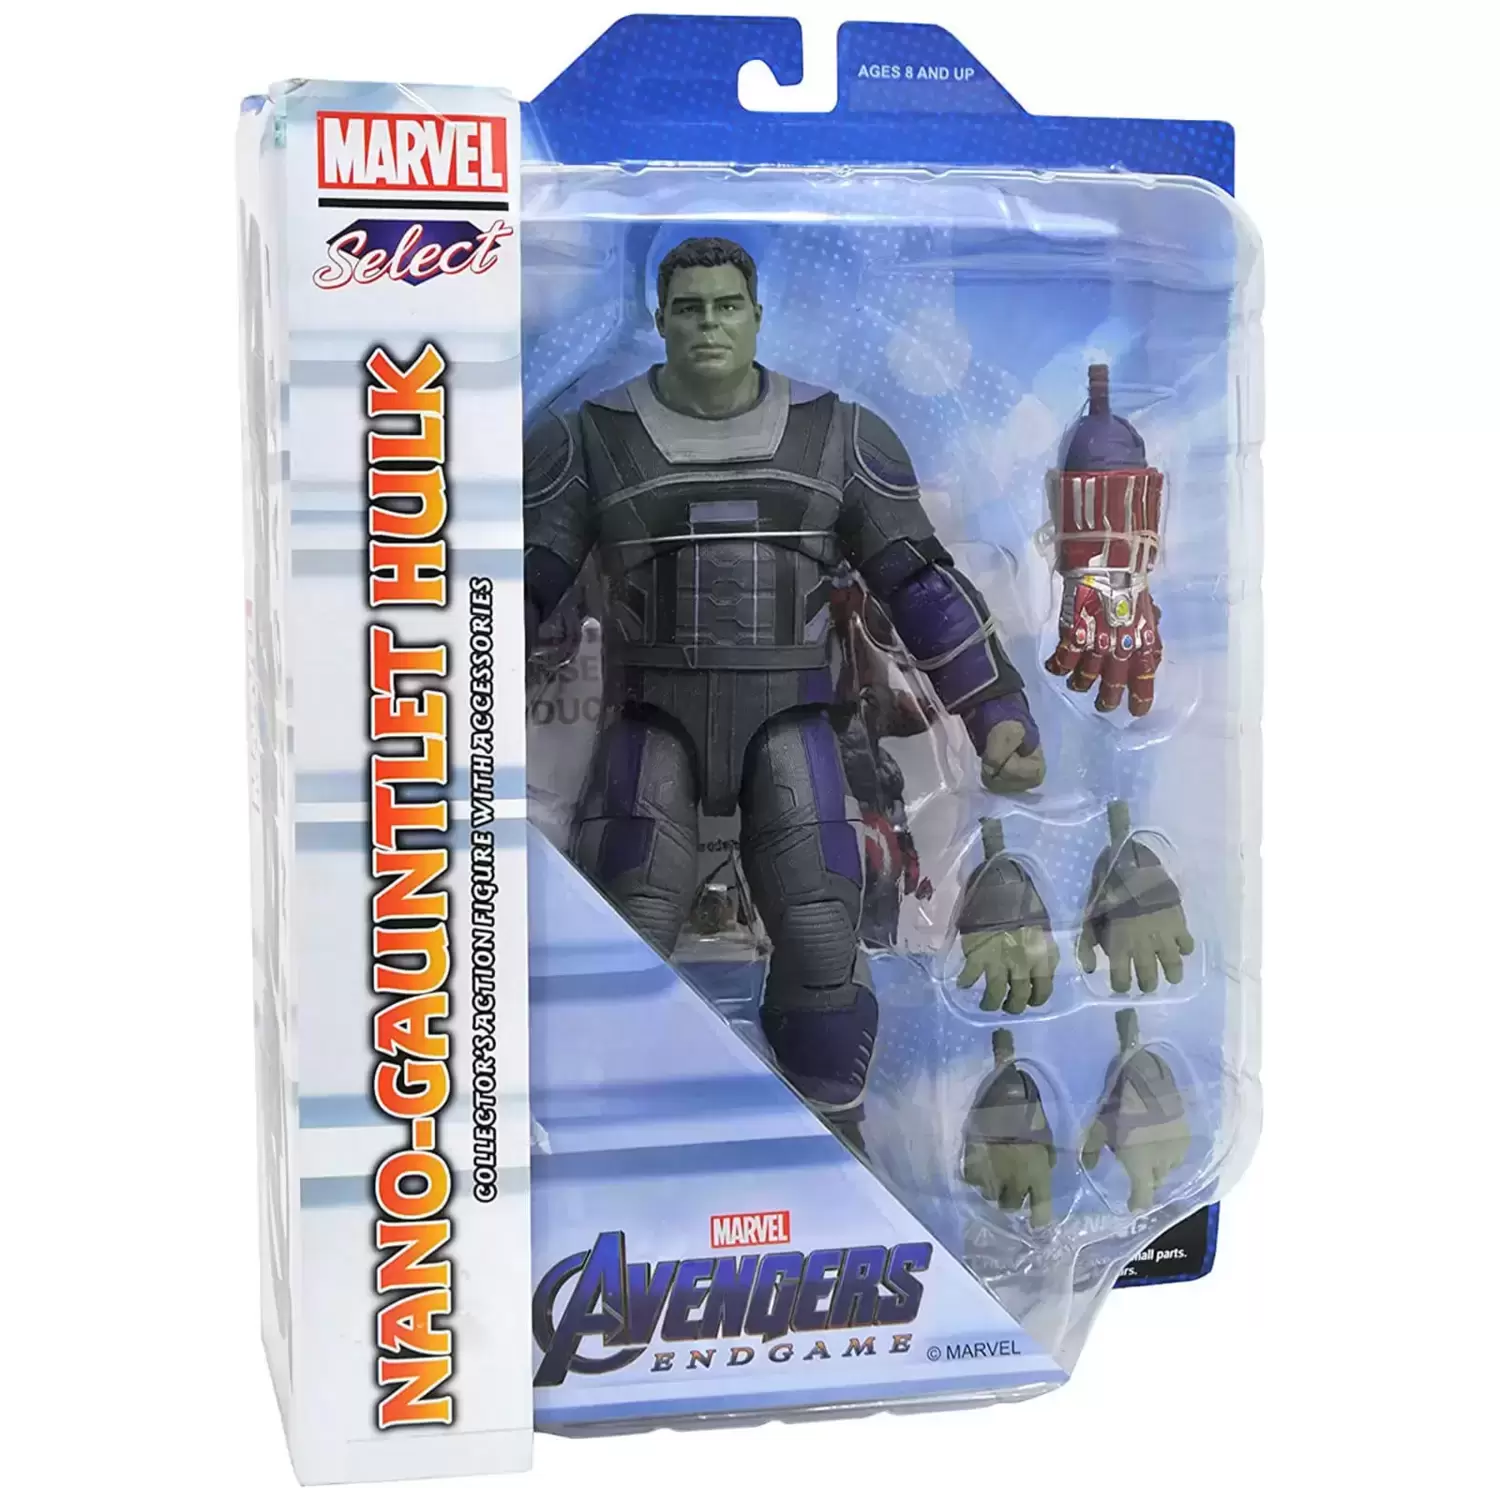 MARVEL Select - Avengers: Endgame - Hulk